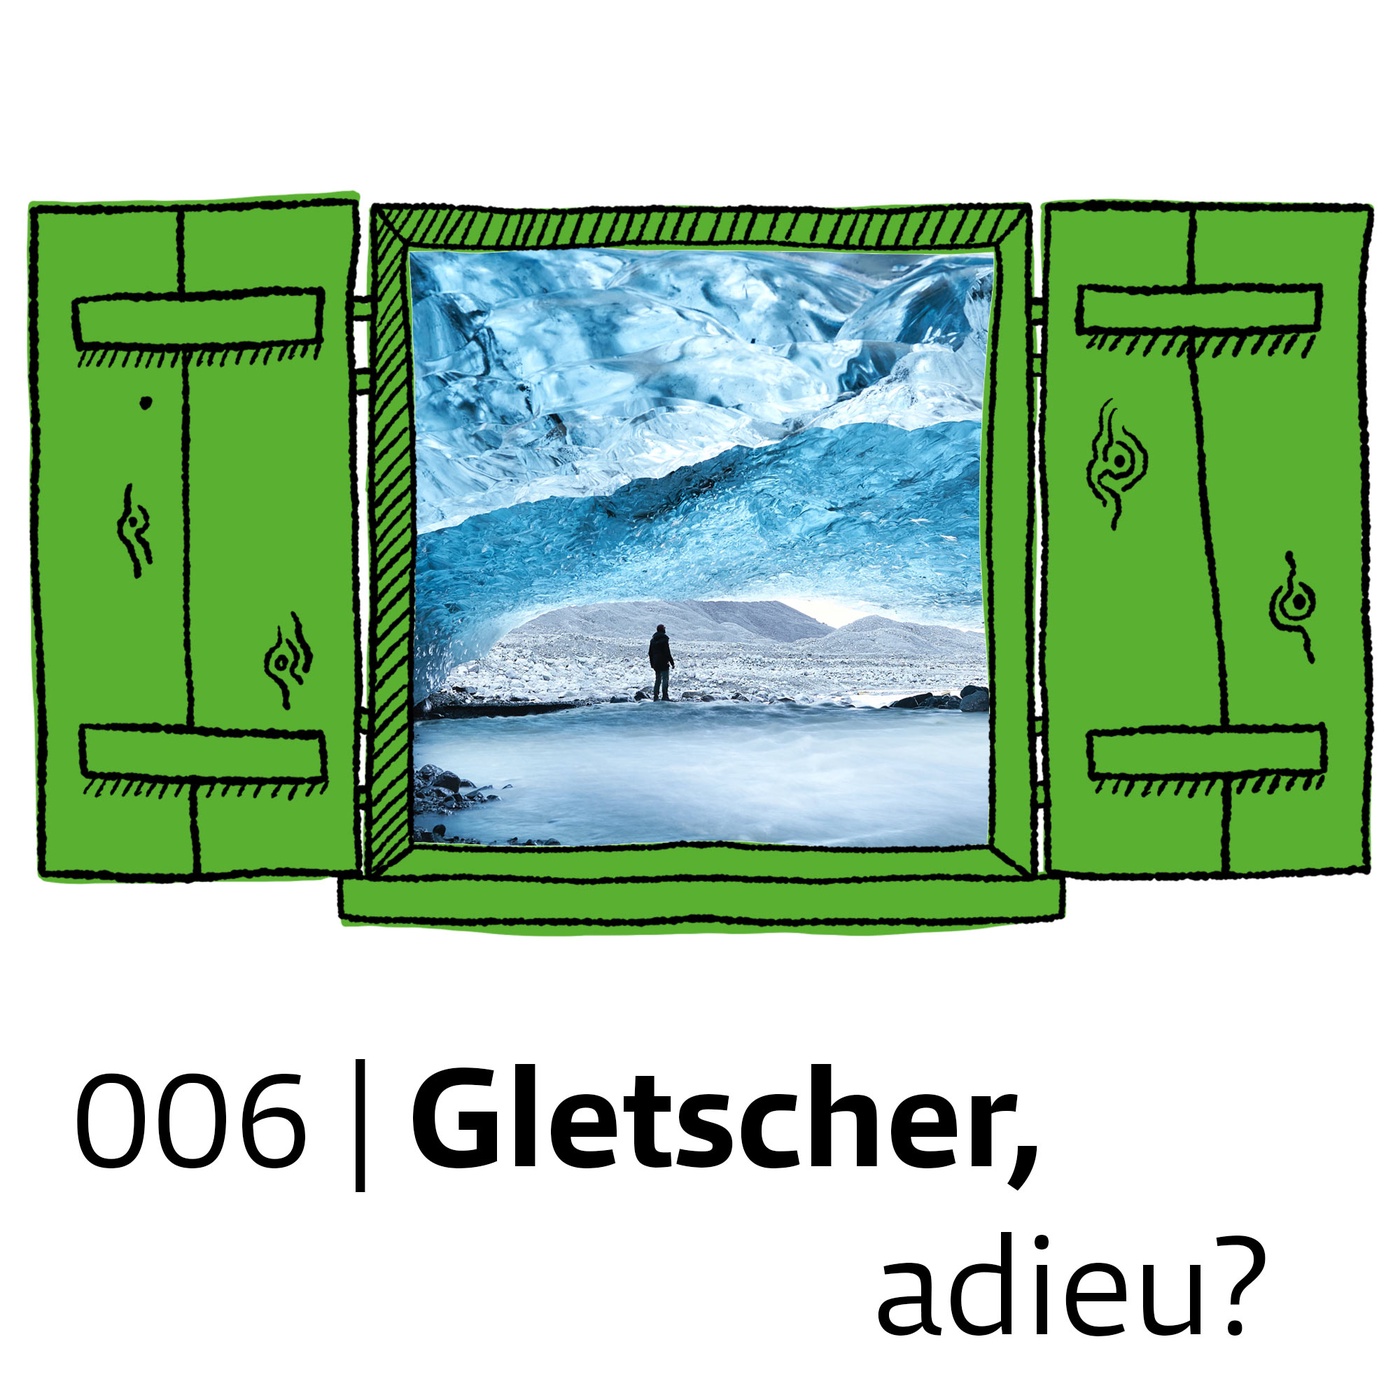 #006 Gletscher, adieu?